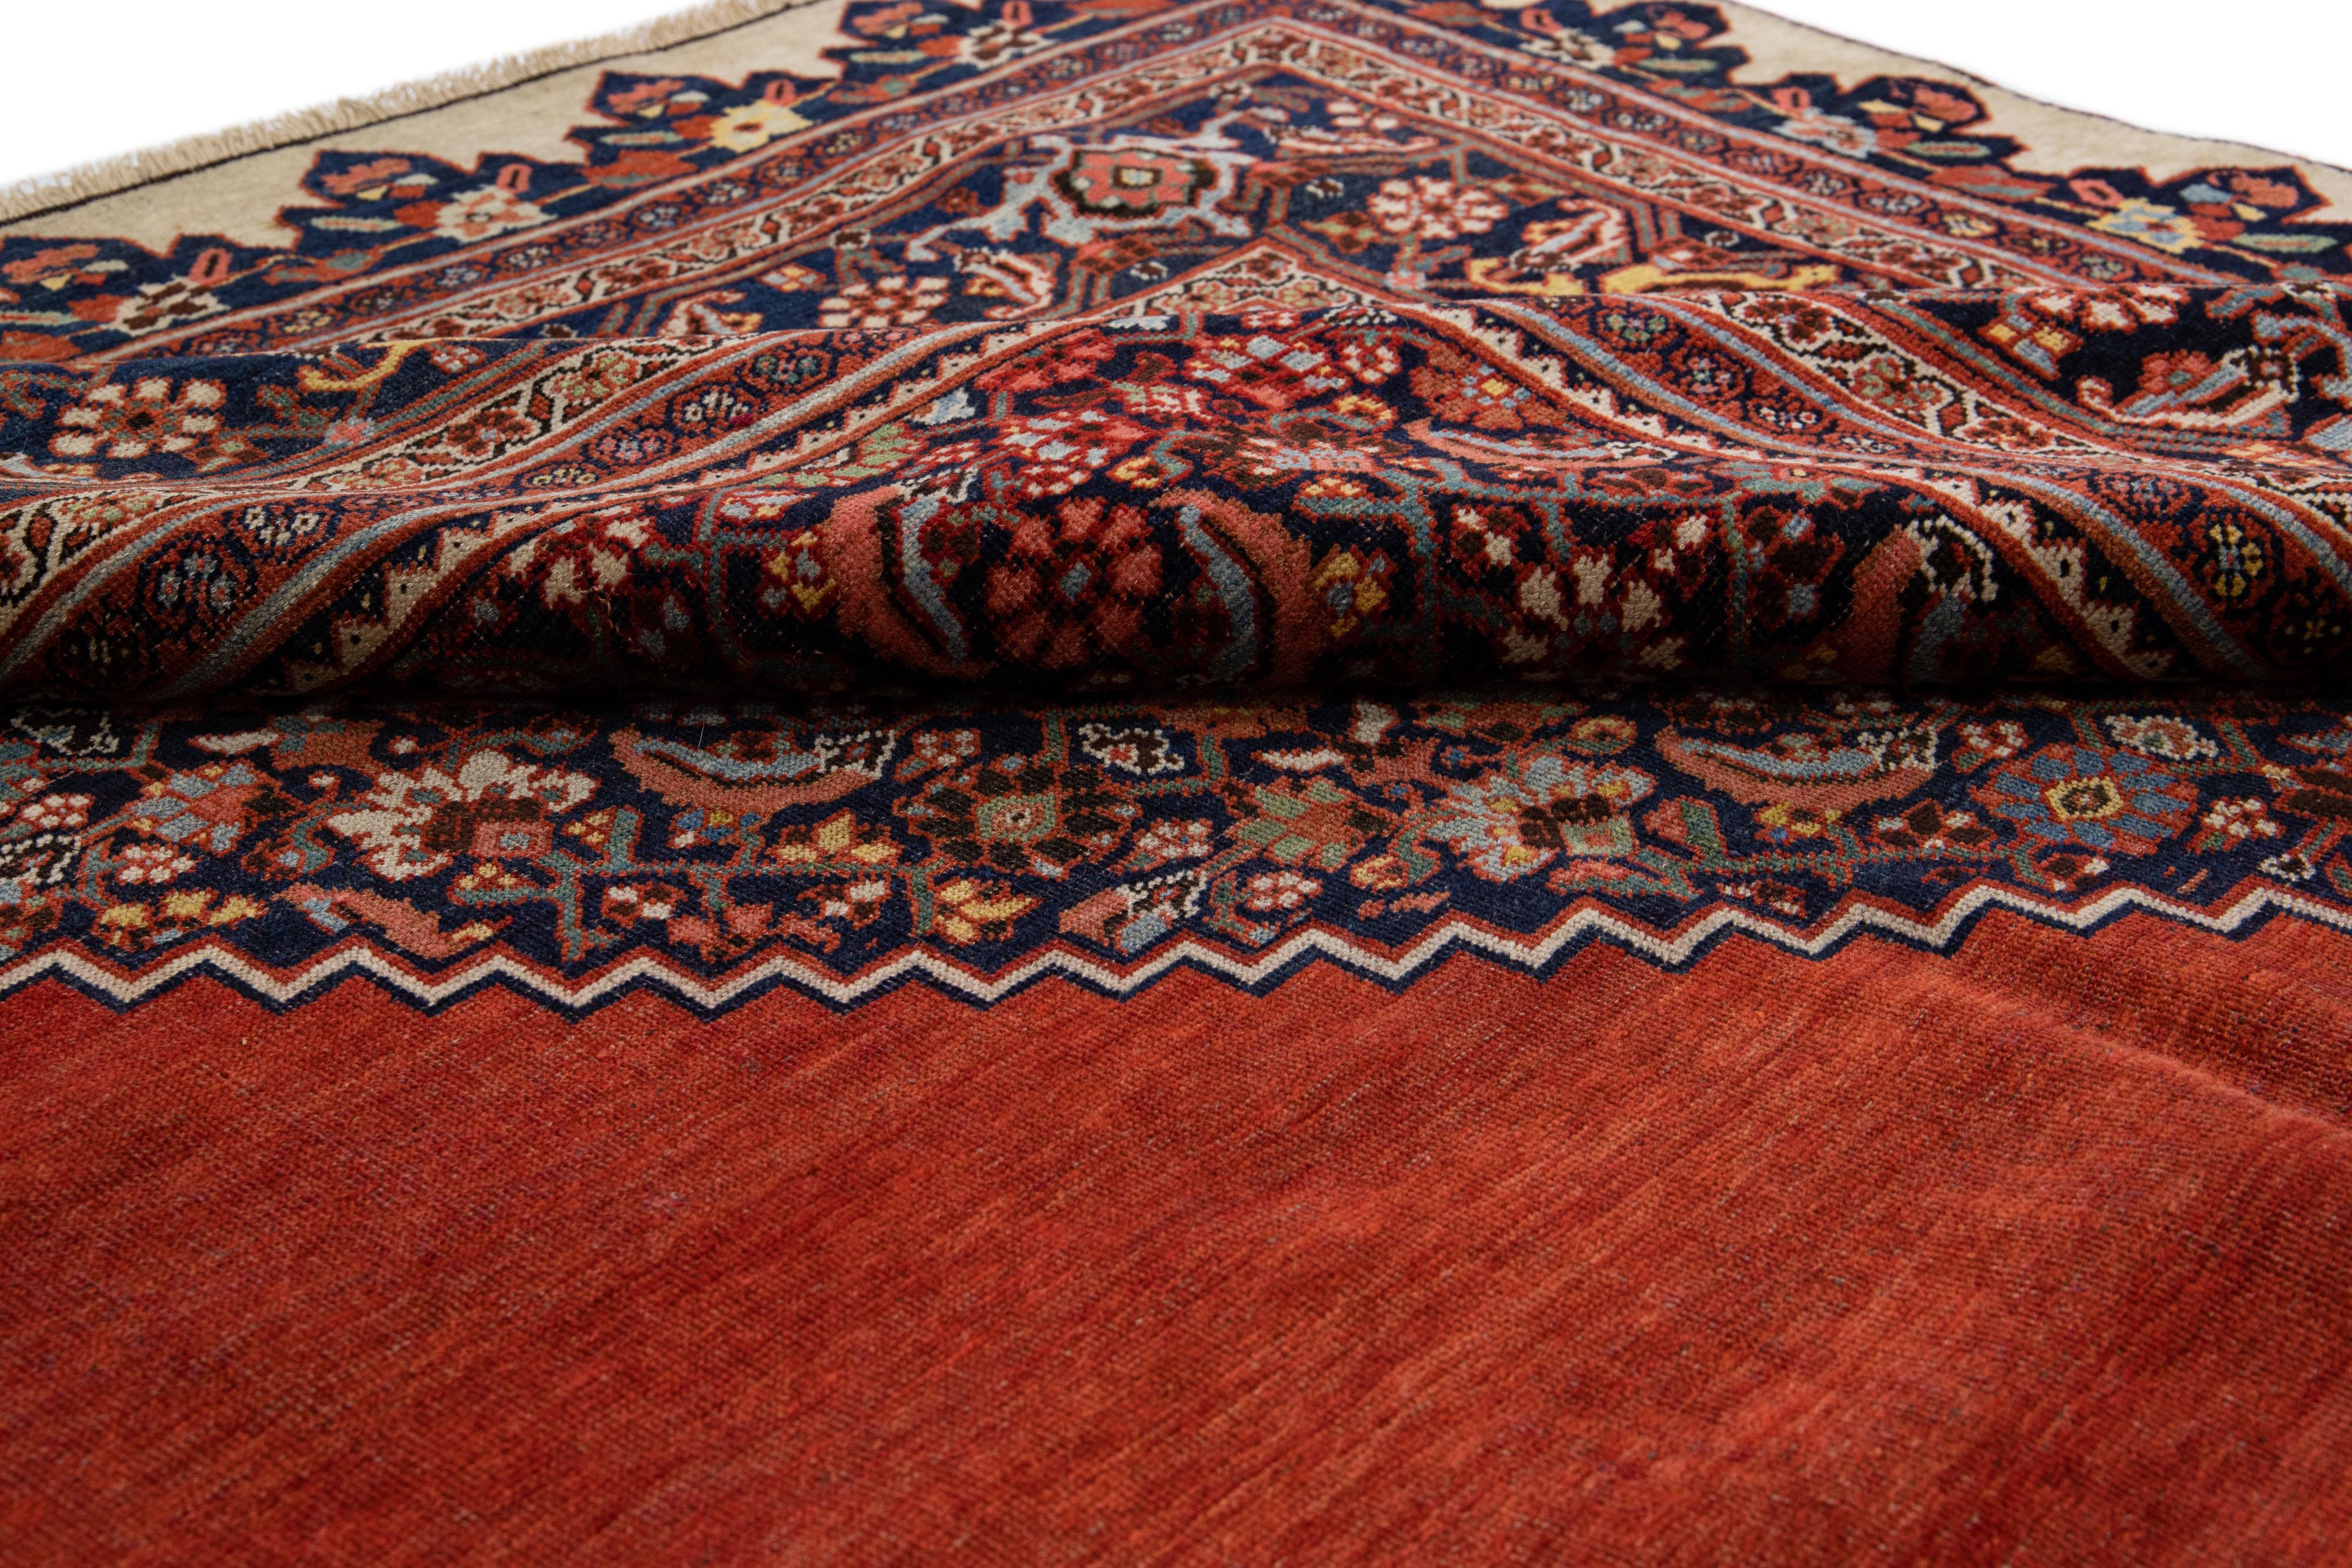 Magnifique tapis ancien Bidjar en laine nouée à la main avec un champ rouge. Ce tapis persan présente des accents multicolores dans un motif central en médaillon.

Ce tapis mesure : 11'1